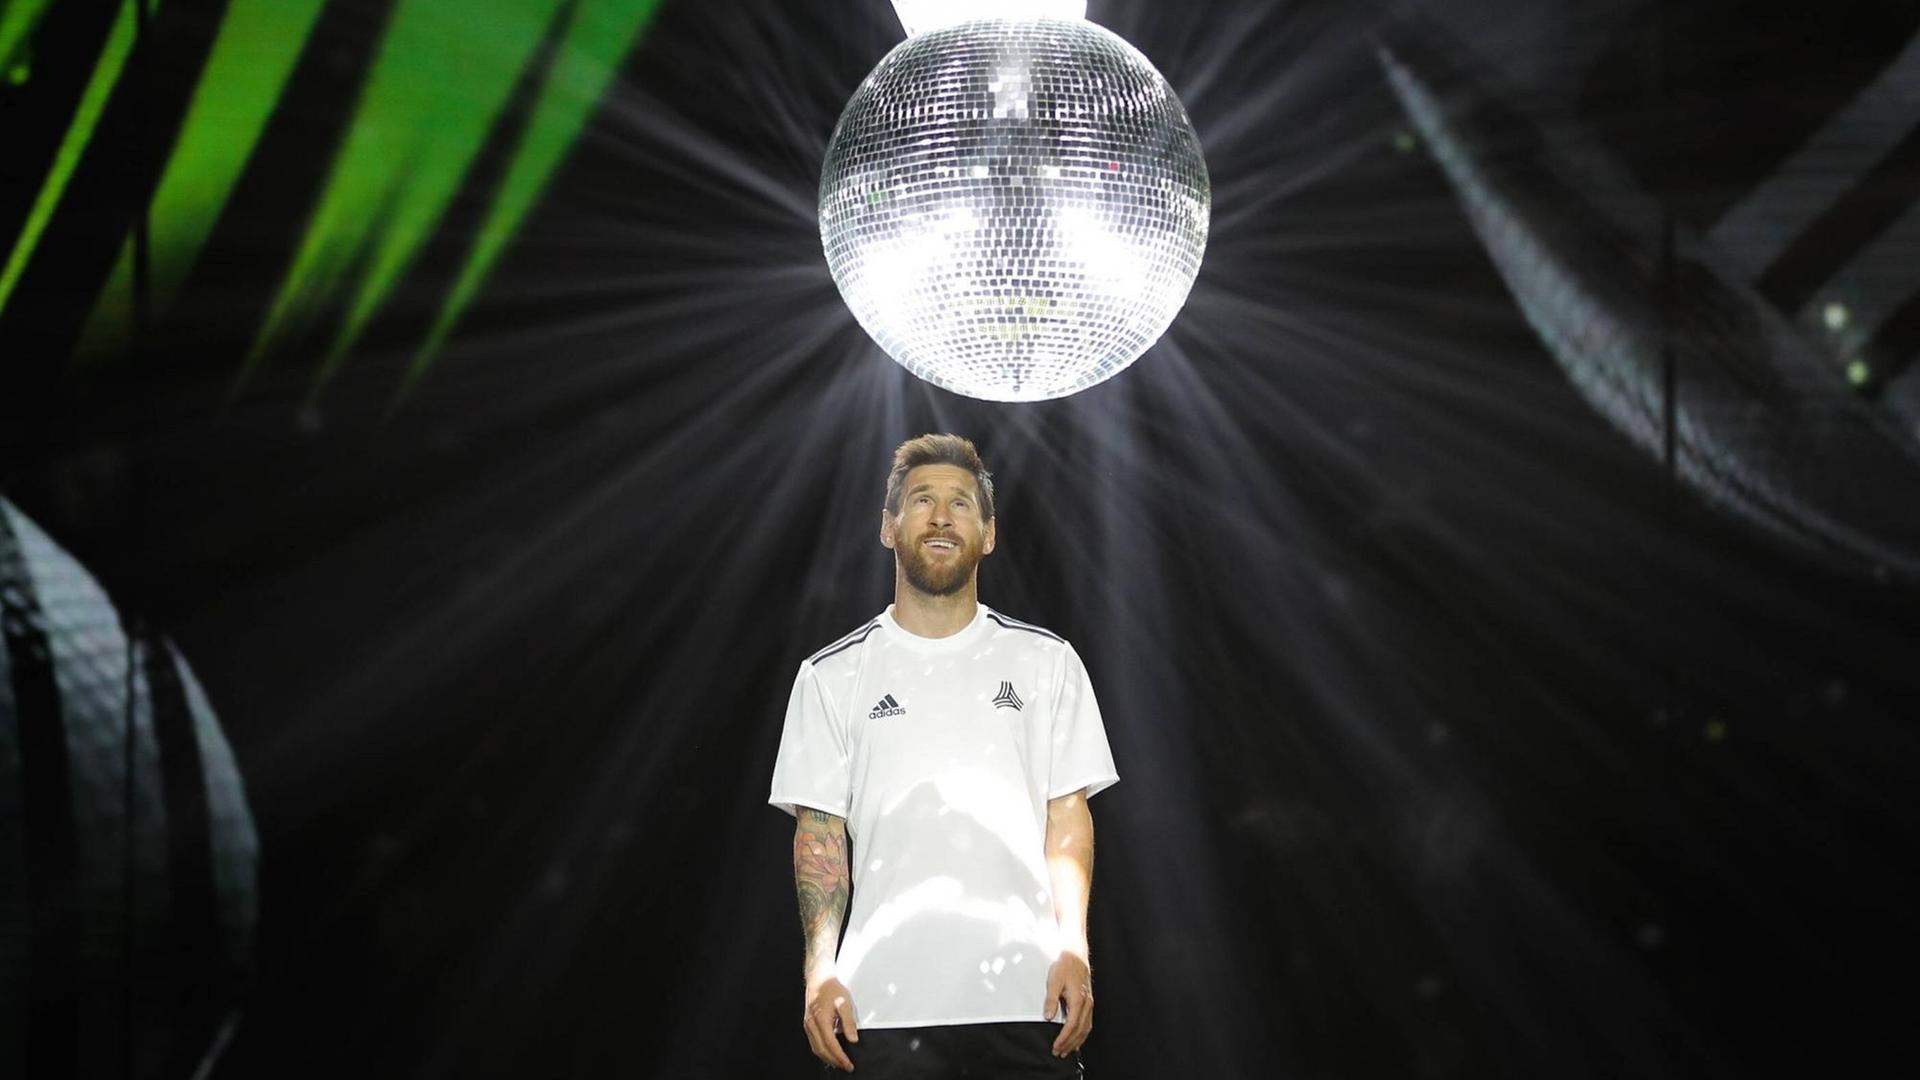 Der argentinische Fußballer Lionel Messi ist Werbefigur für den Sportartikelhersteller adidas. Hier zu sehen mit einer großen Diskokugel.